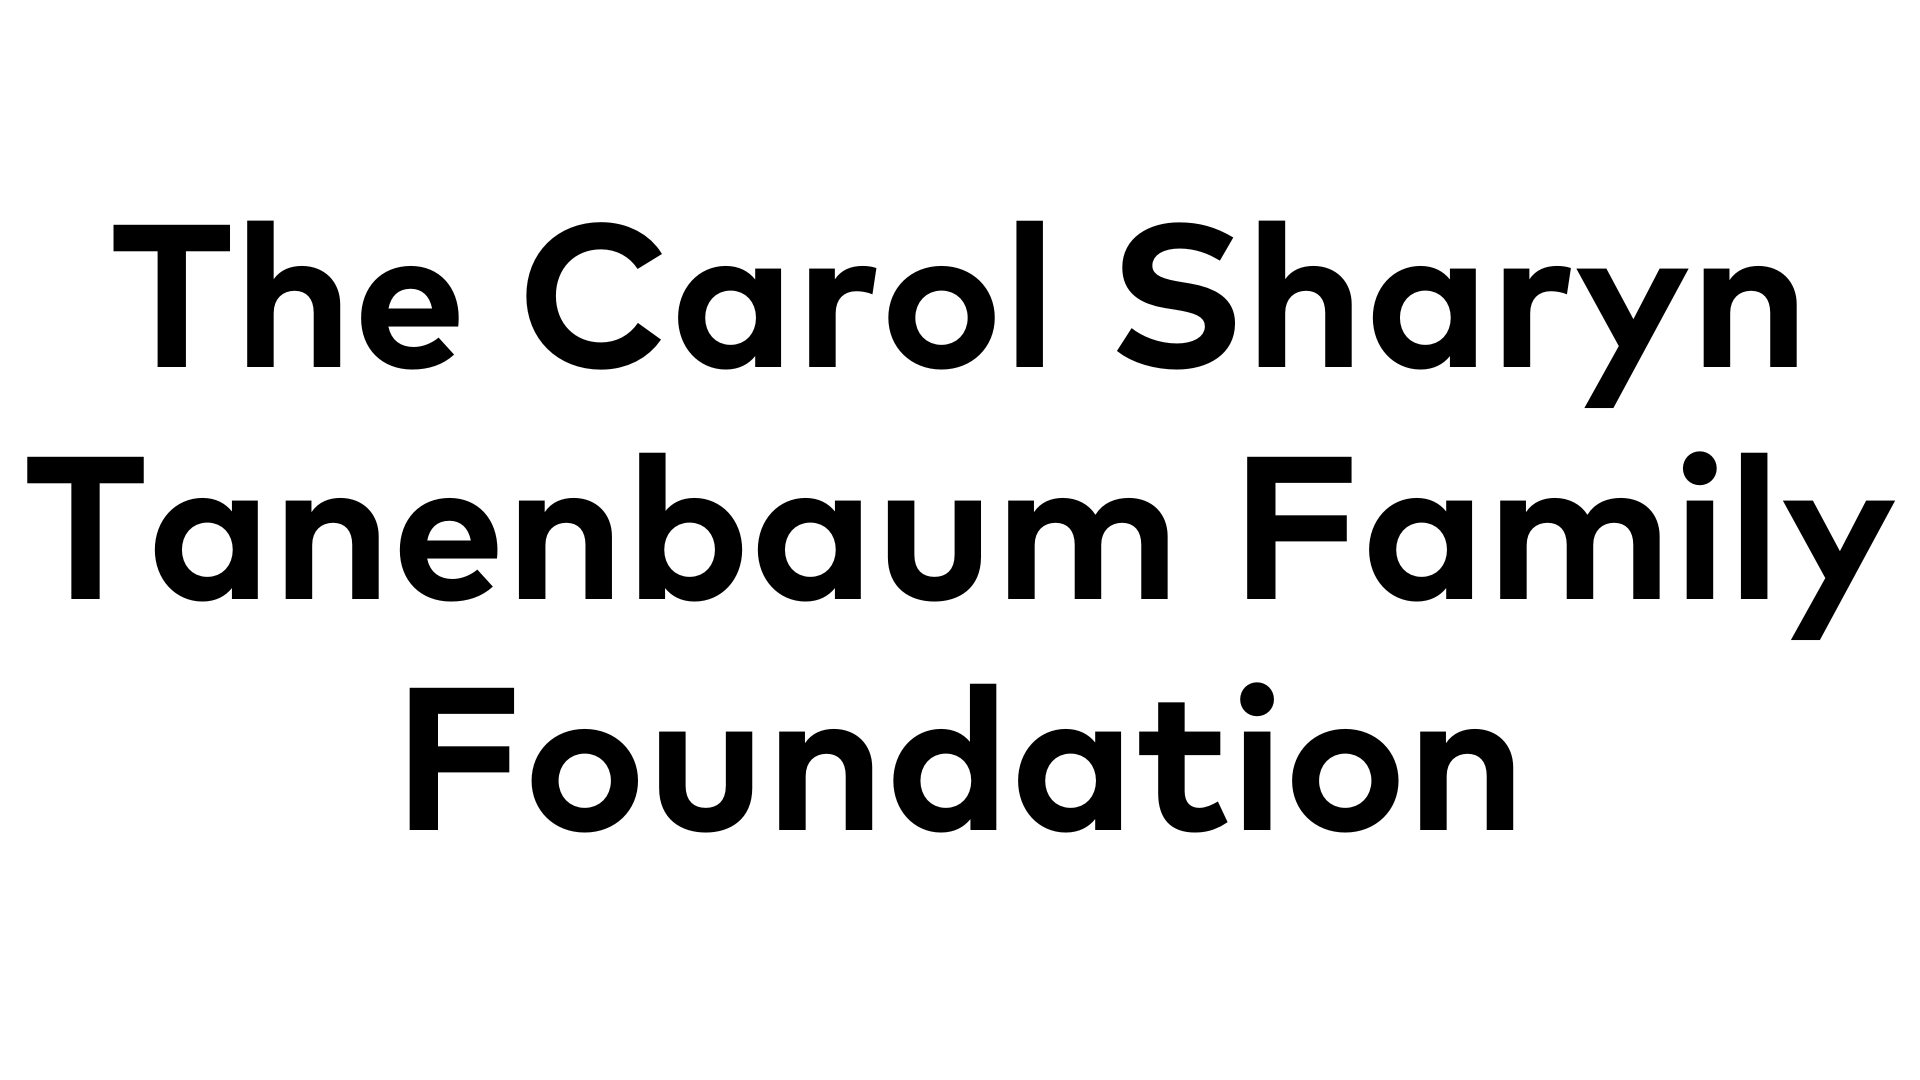 The Carol Sharyn Tanenbaum Family Foundation The Carol Sharyn Tanenbaum Family Foundation